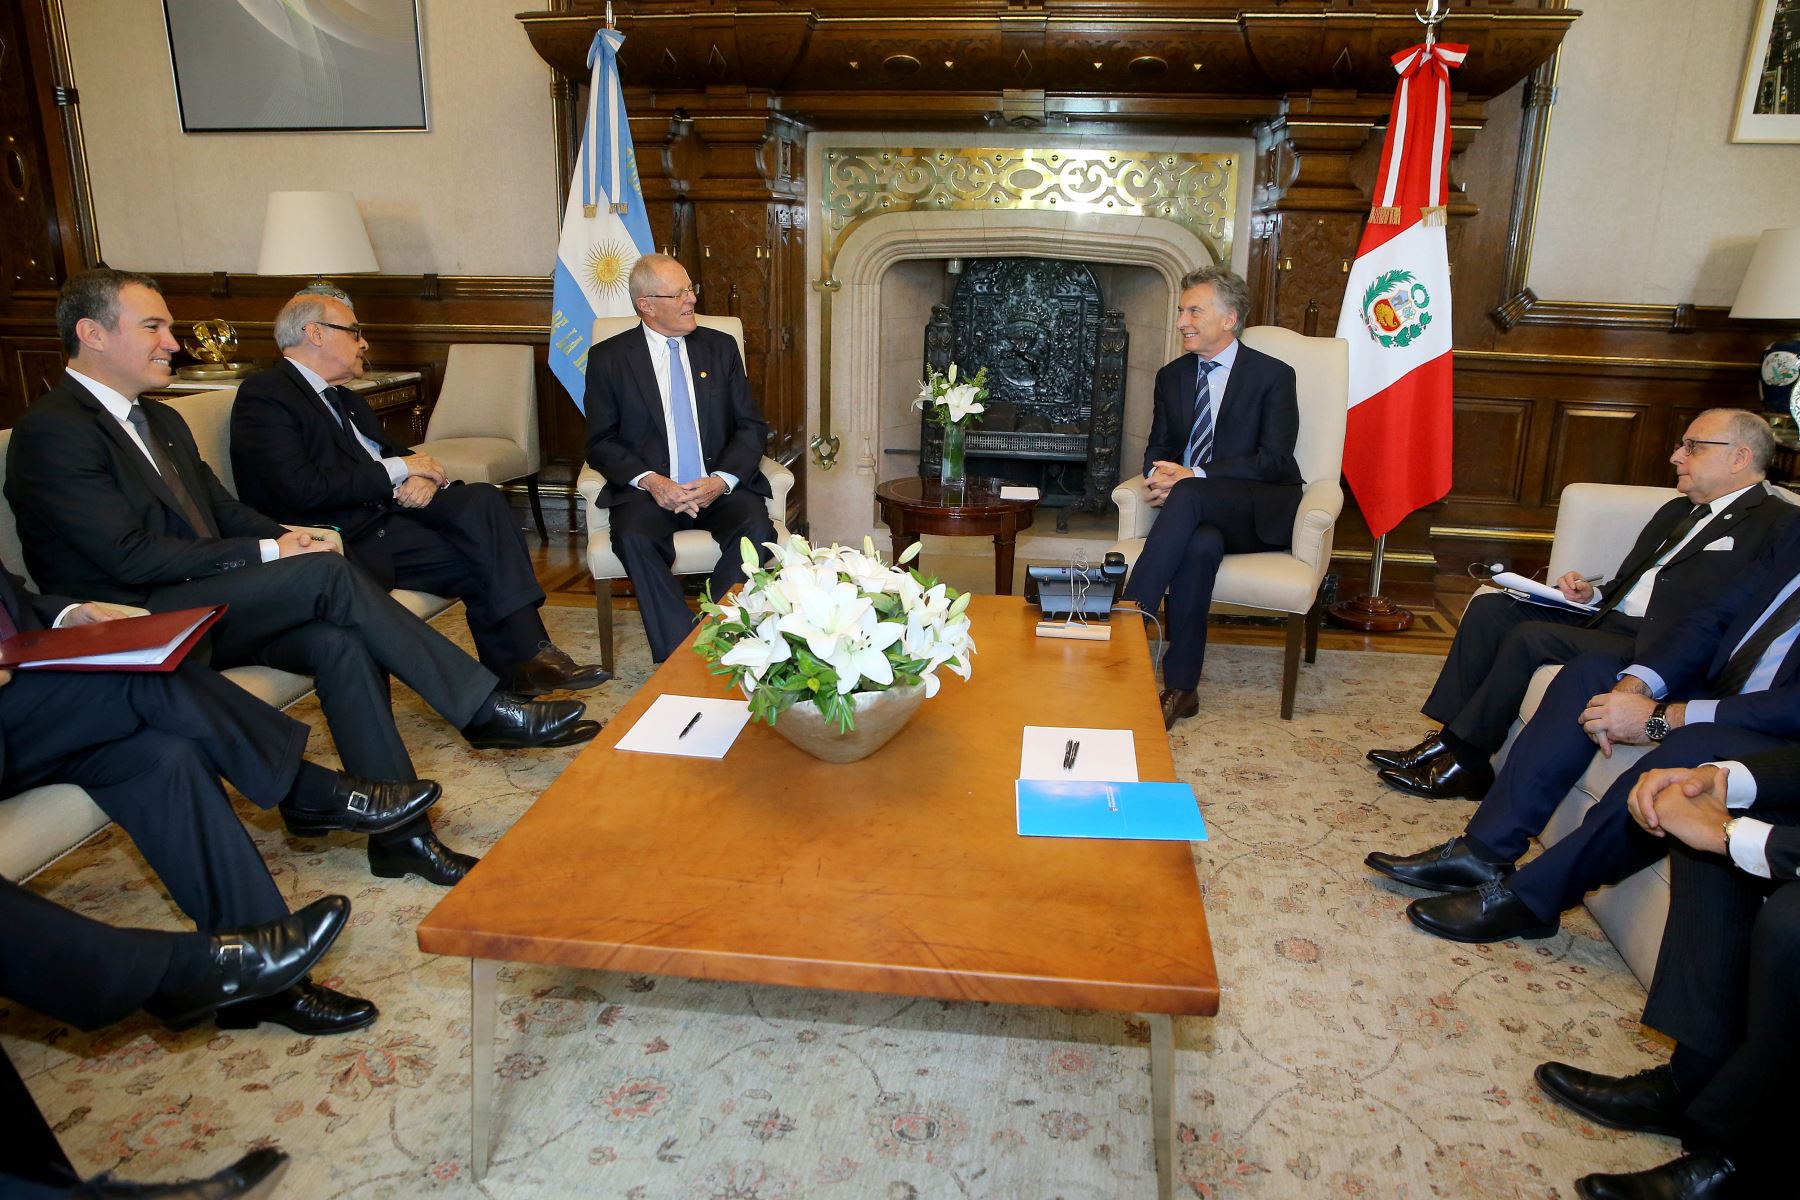 Ambos jefes de Estado discutieron temas referidos a la relación bilateral entre Perú y Argentina. Foto: ANDINA/Prensa Presidencia.